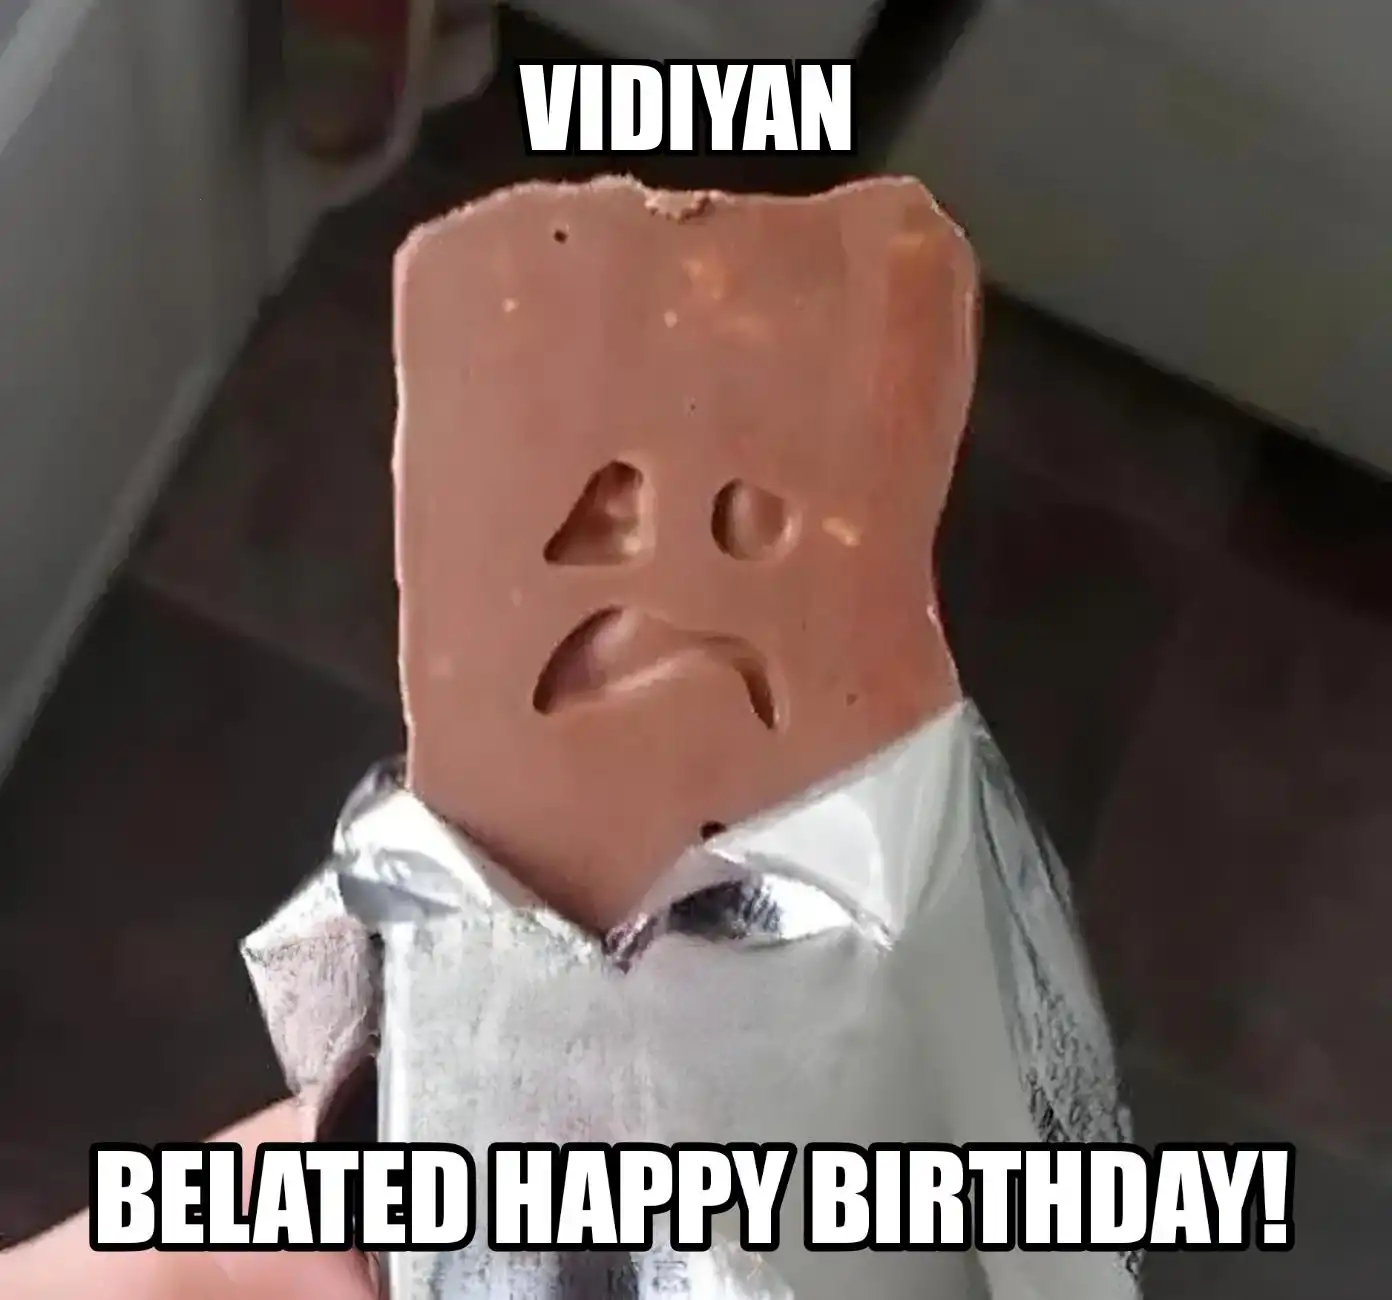 Happy Birthday Vidiyan Belated Happy Birthday Meme